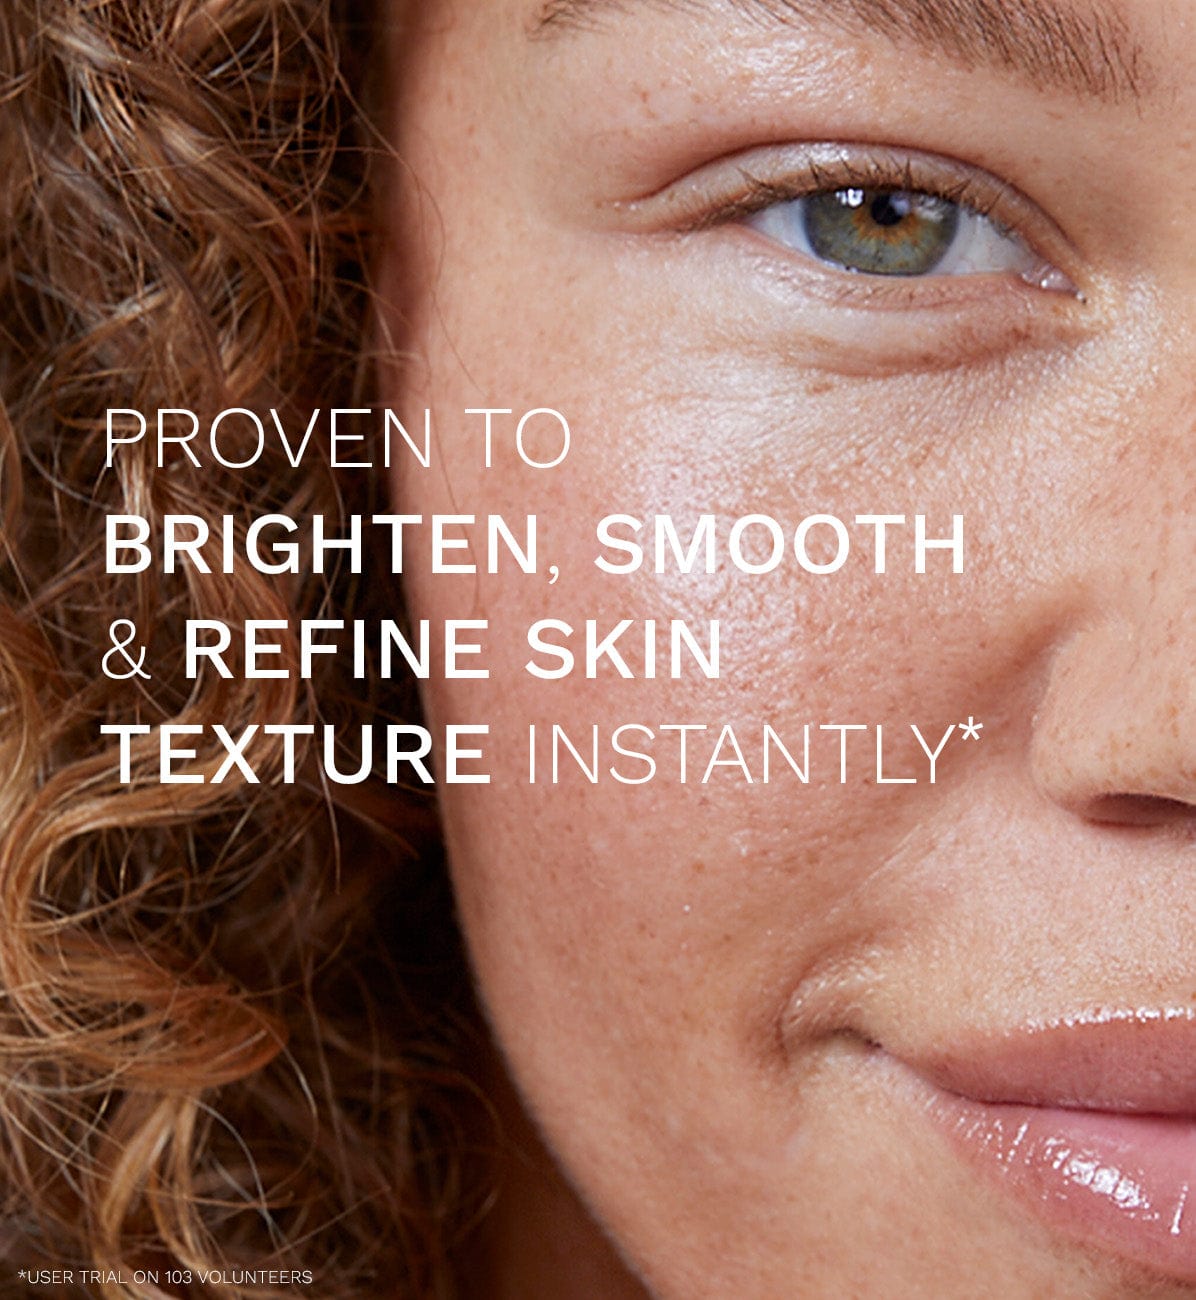 ren-clean-skincare-radiance-pha-exfoliating-facial-31015673790506.jpg